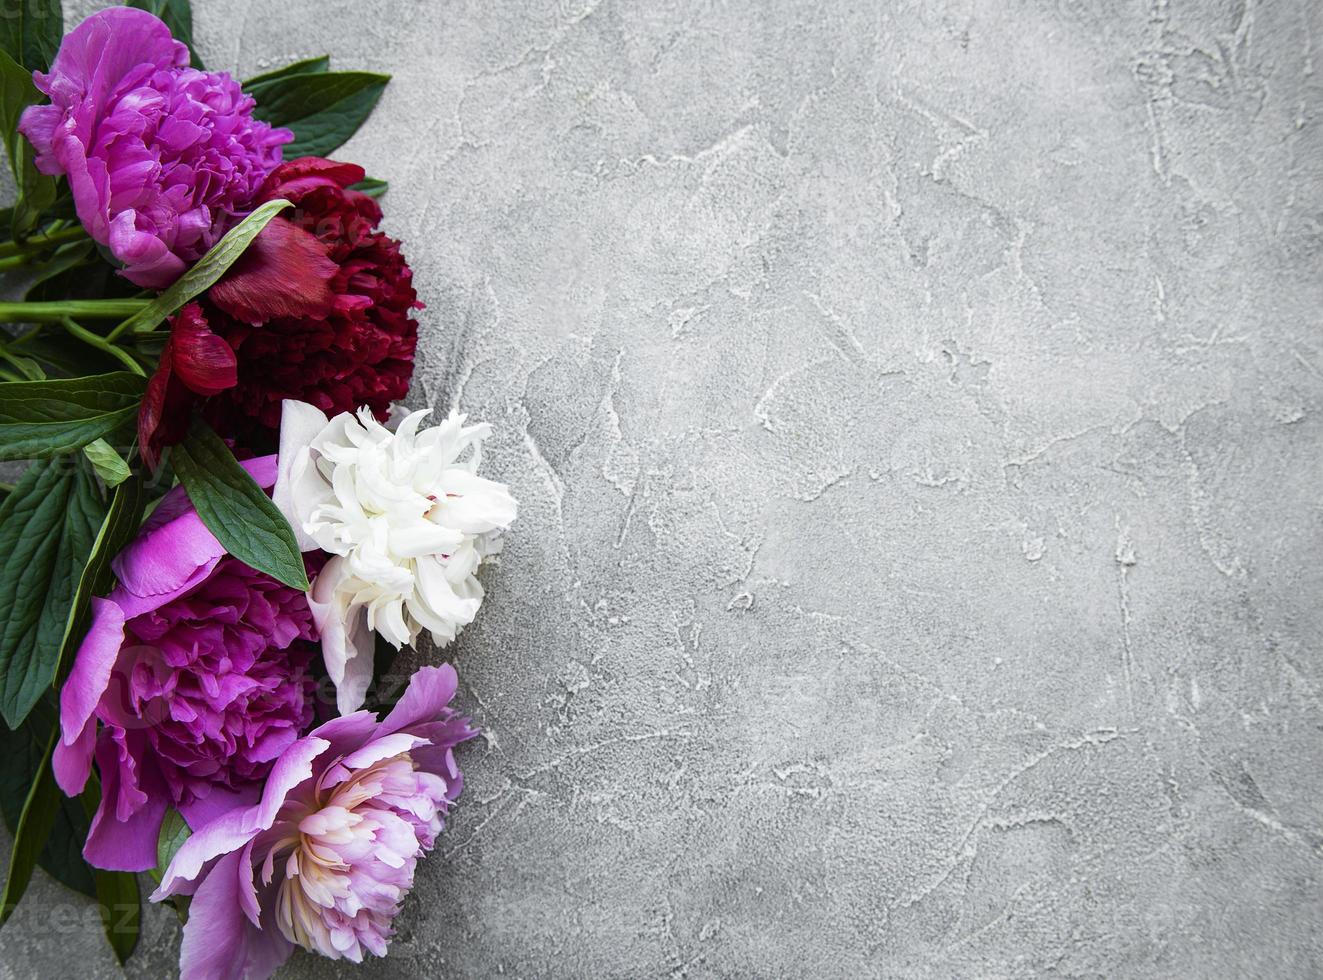 Pfingstrosenblumen auf einem grauen Betonhintergrund foto